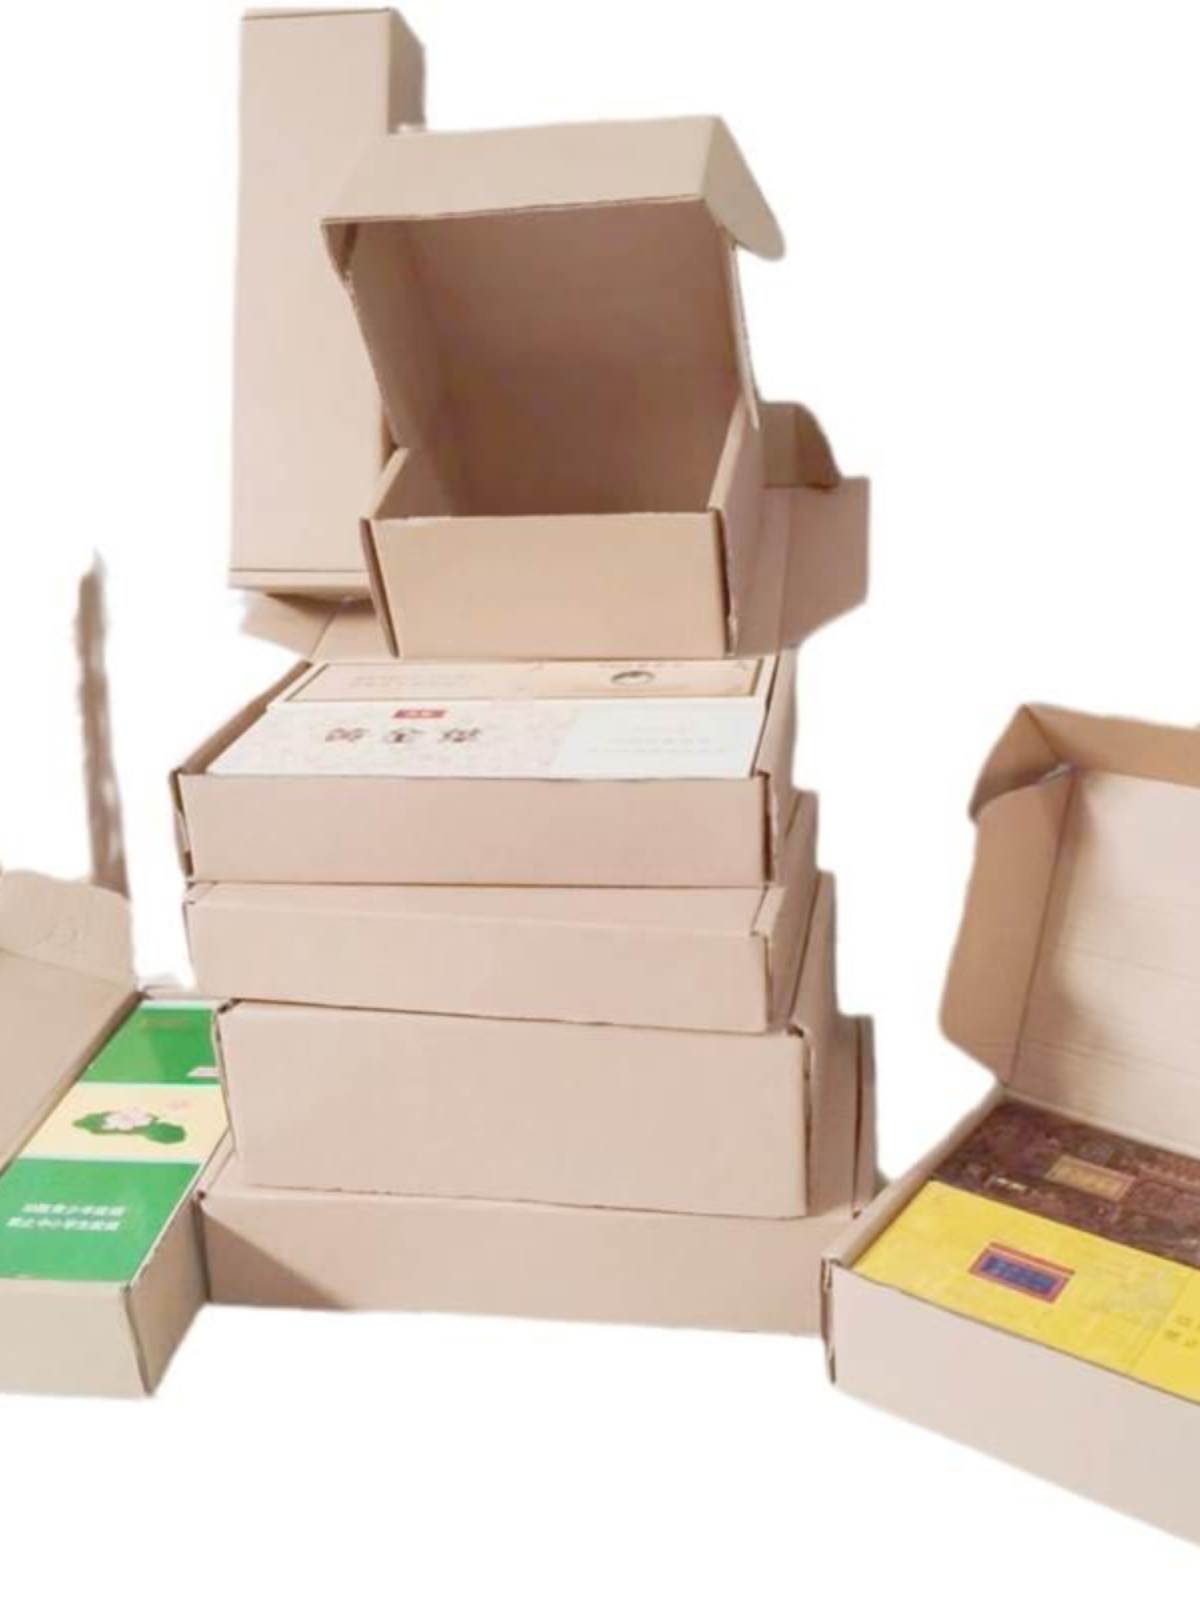 烟盒飞机盒装烟天叶双中香烟中华寄支打包盒盒子金中纸箱纸盒箱子